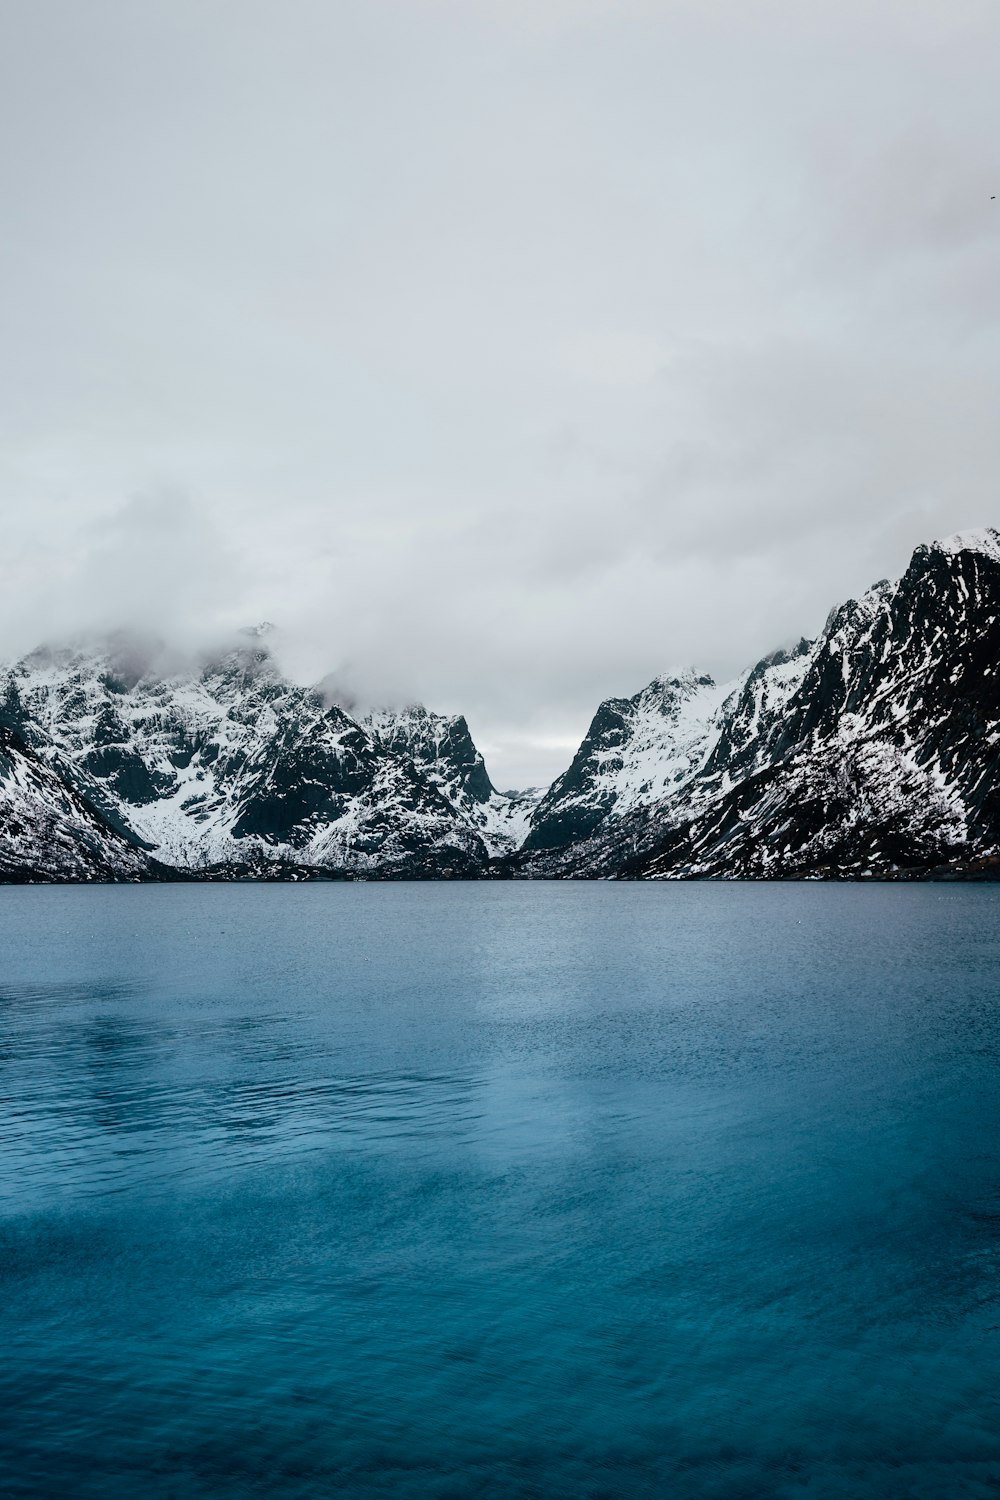 cuerpo de agua azul tranquilo y montaña cubierta de nieve bajo nubes grises durante el día